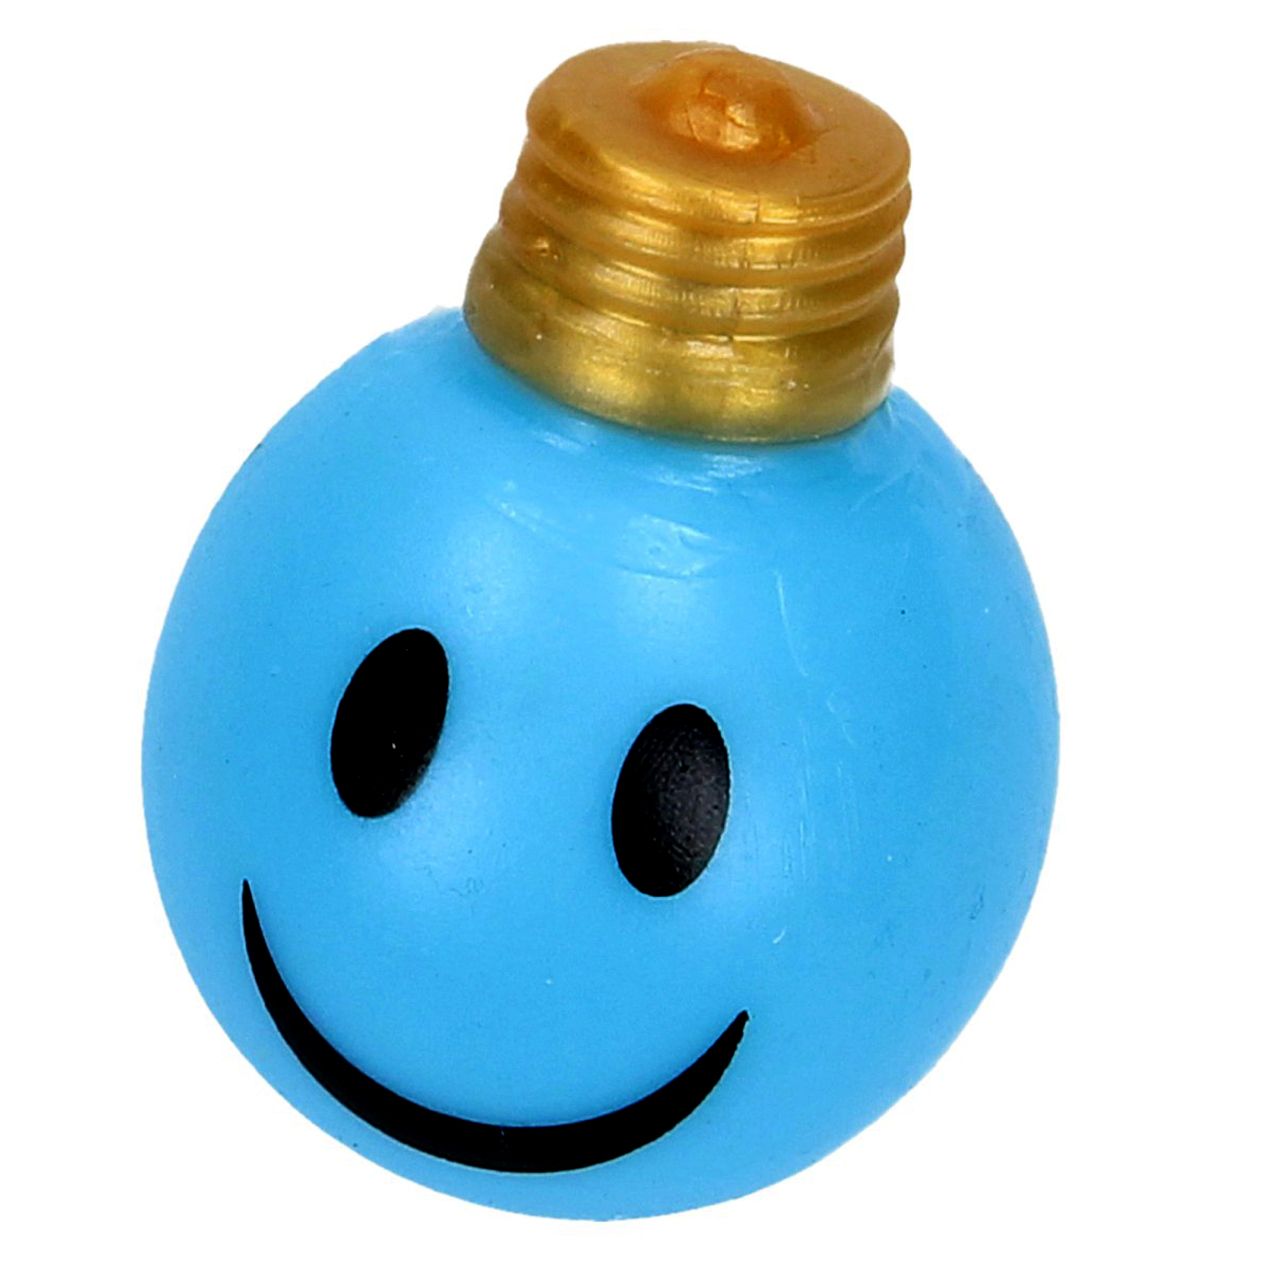 فیجت ضد استرس دنیای سرگرمی های کمیاب مدل لامپ آبکی له شو طرح لبخند -  - 1